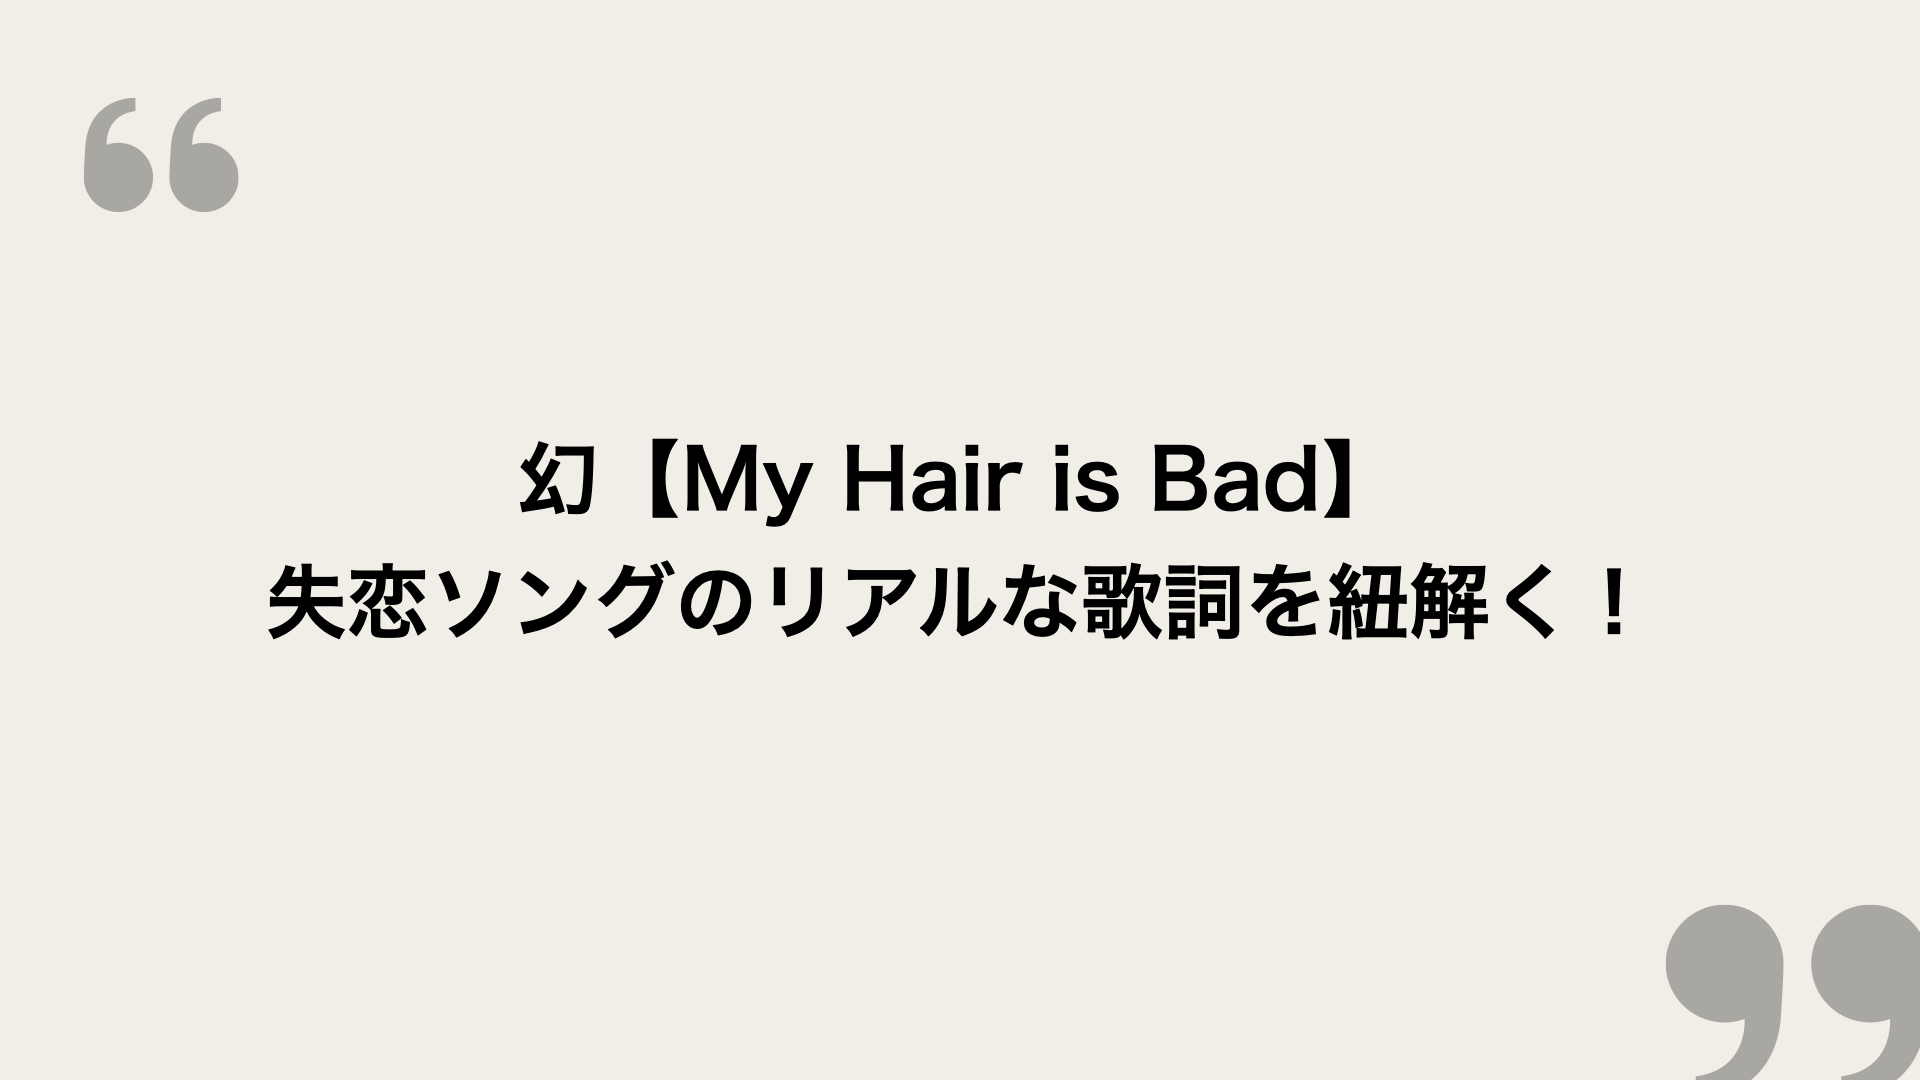 幻 My Hair Is Bad 歌詞の意味を考察 失恋ソングのリアルな歌詞を紐解く Framu Media